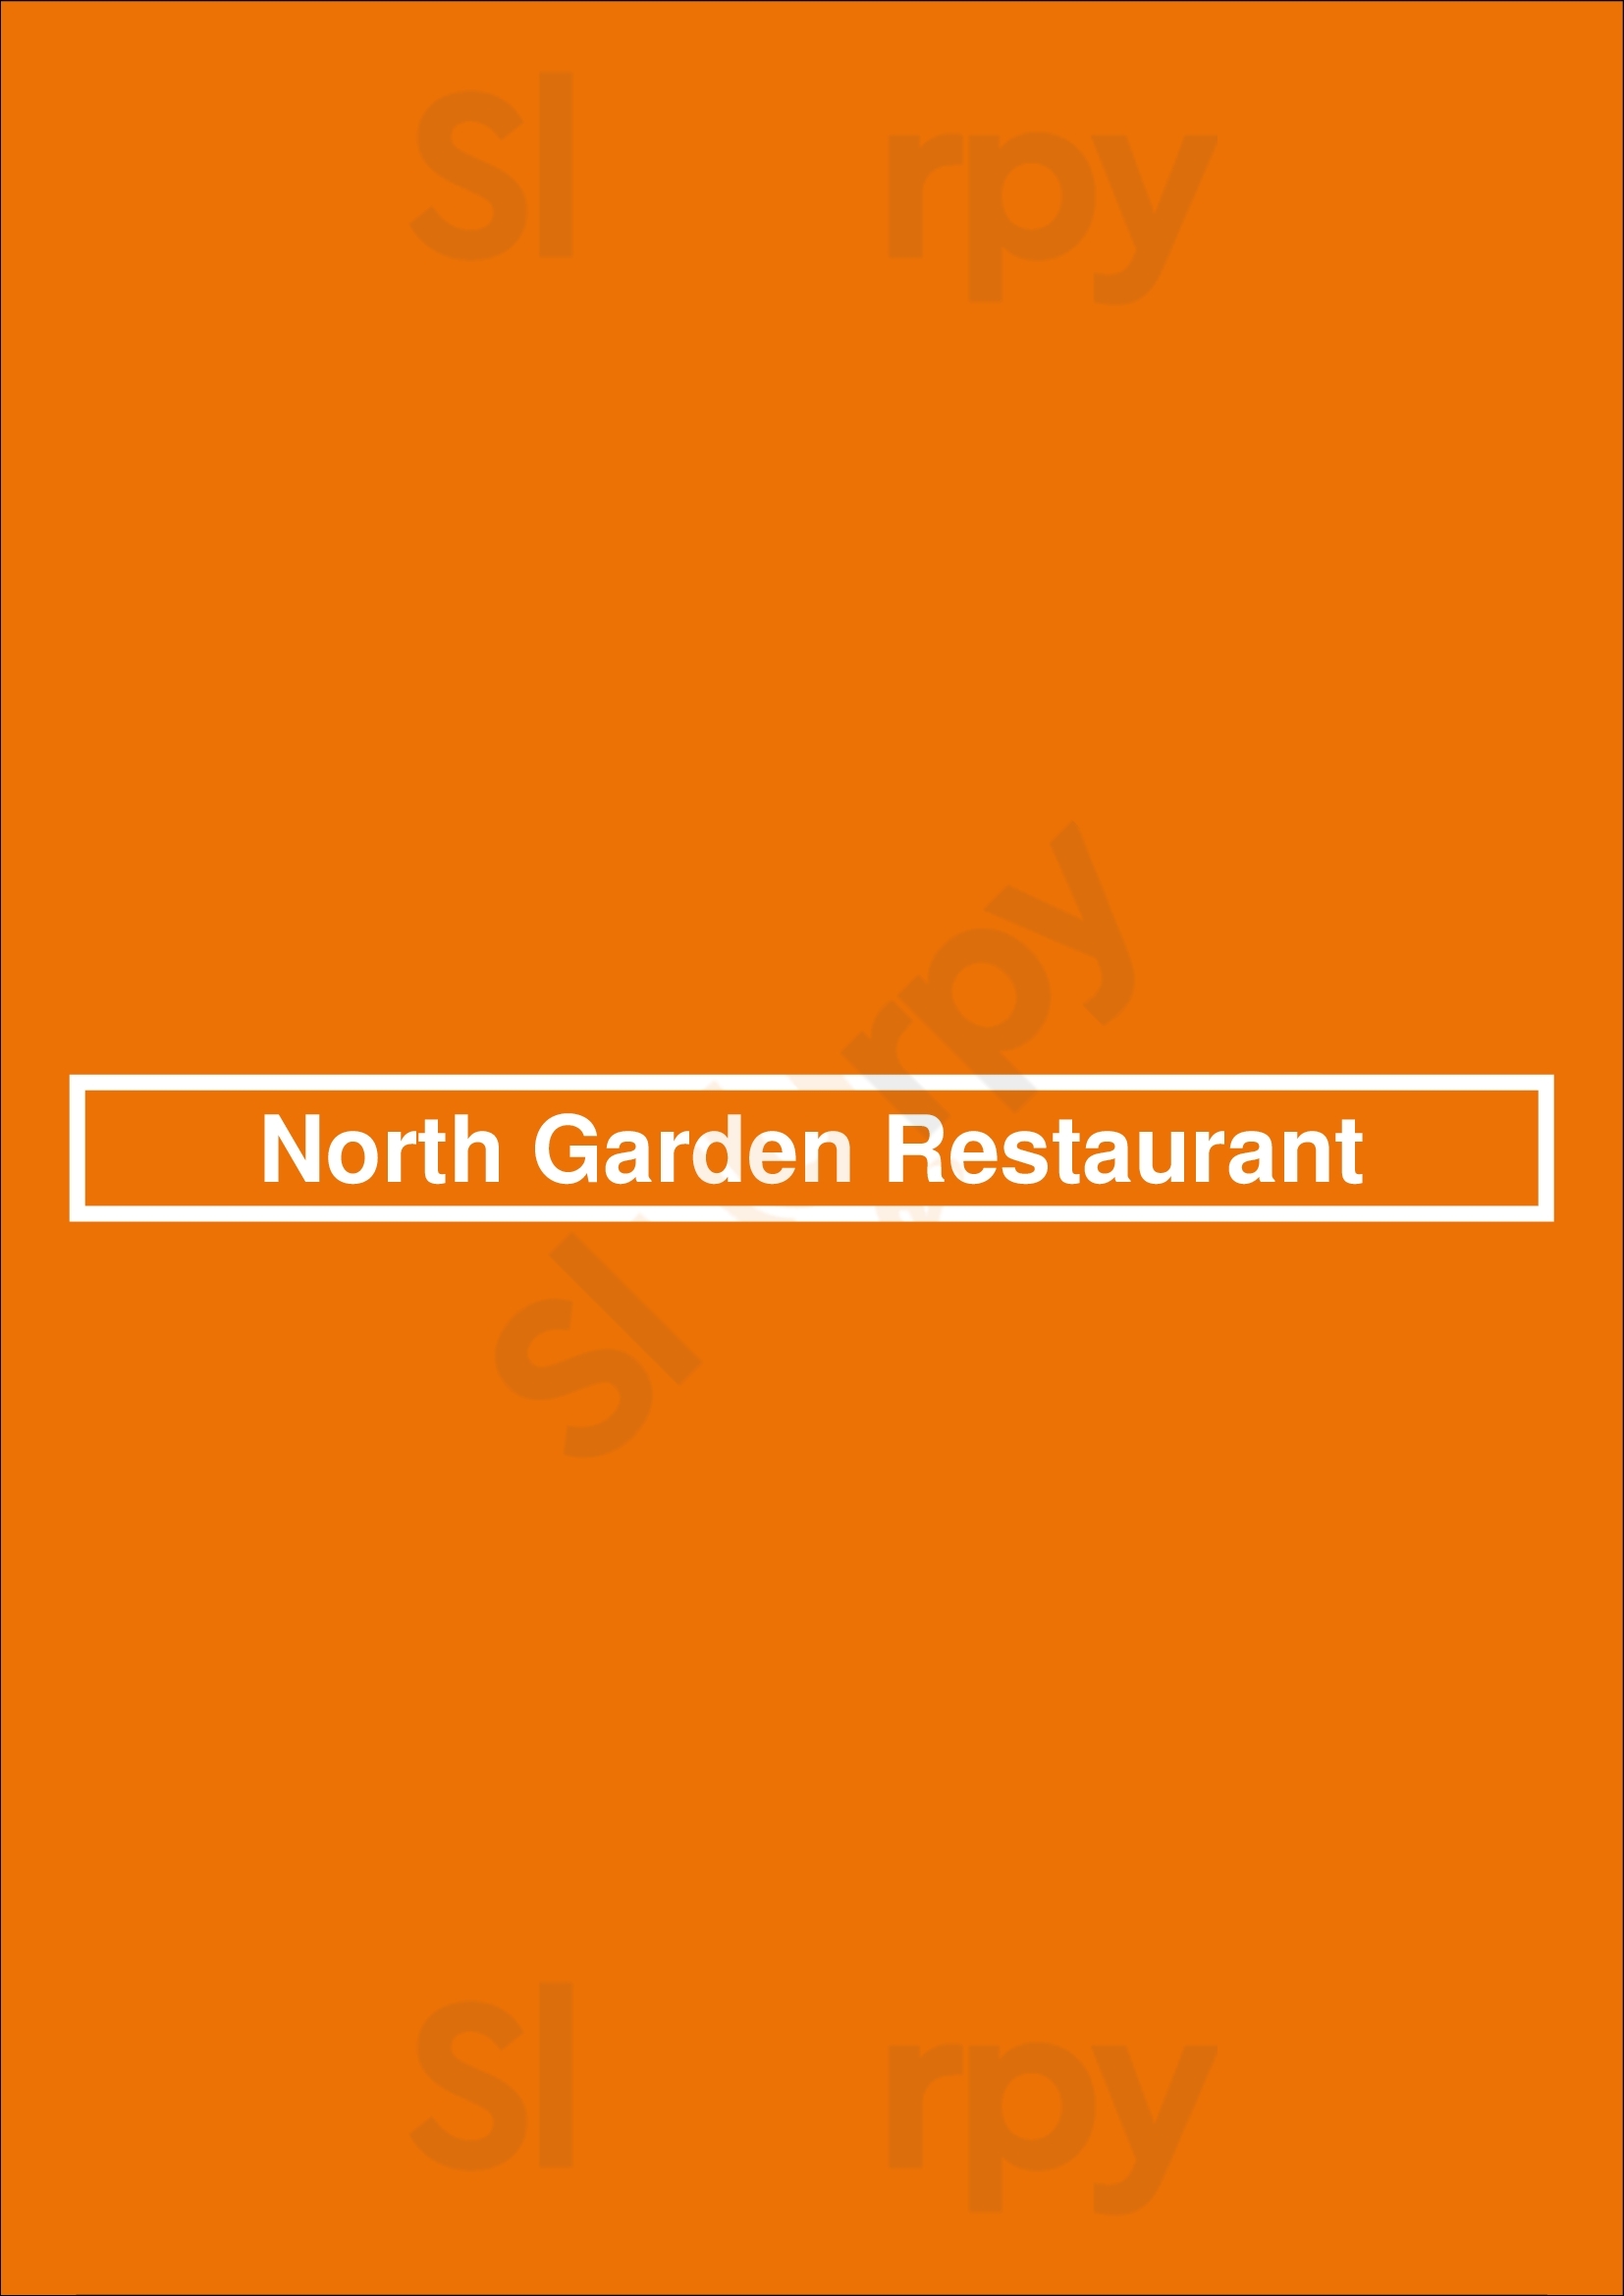 North Garden Restaurant Winnipeg Menu - 1